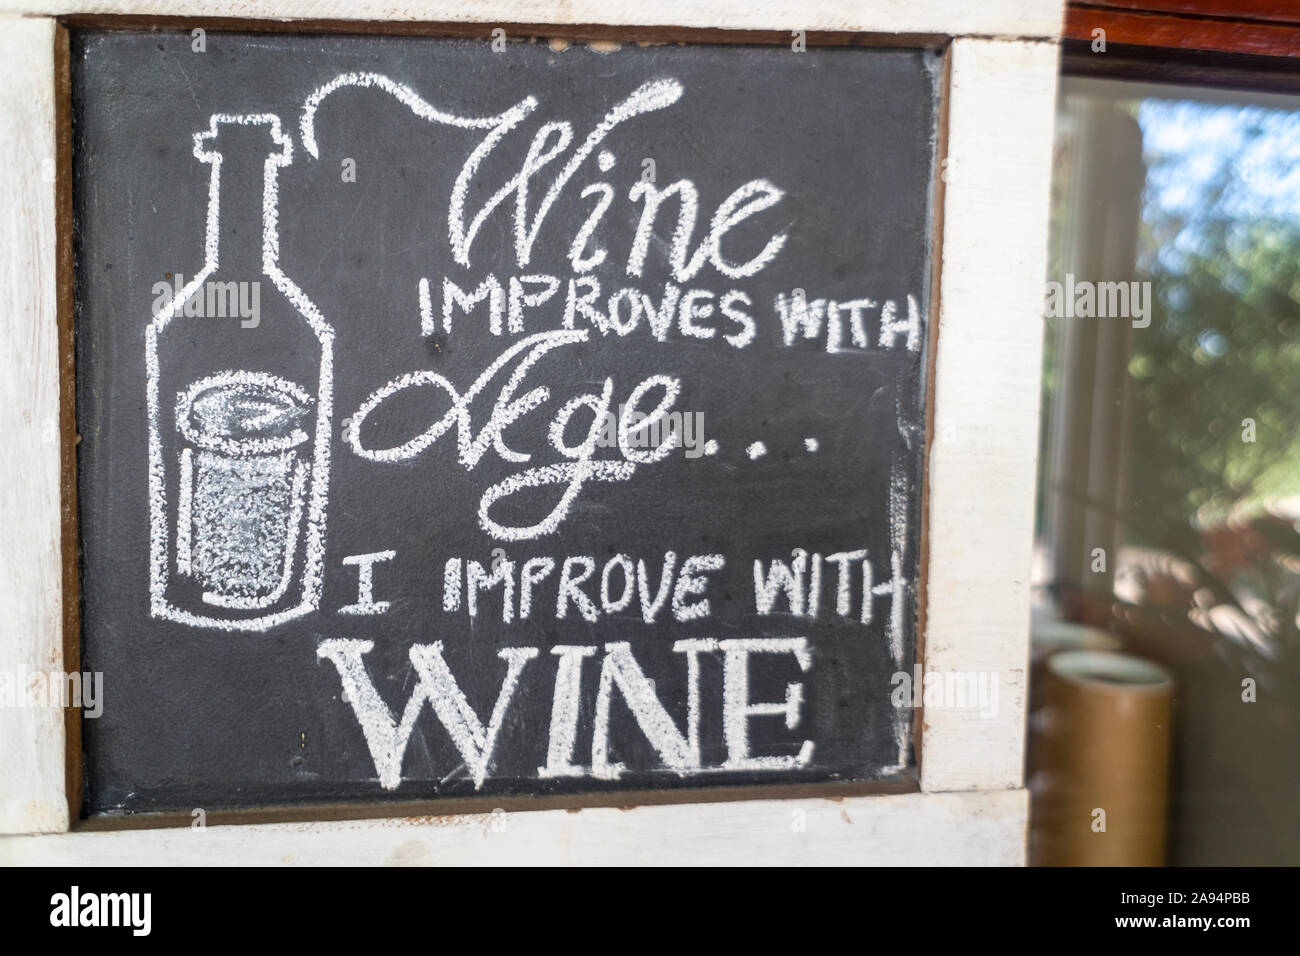 Divertenti, funny, quirky proverbi, aneddoti, messaggi scritti su una lavagna in gesso bianco sul vino in una cantina di vino concetto di stile di vita Foto Stock